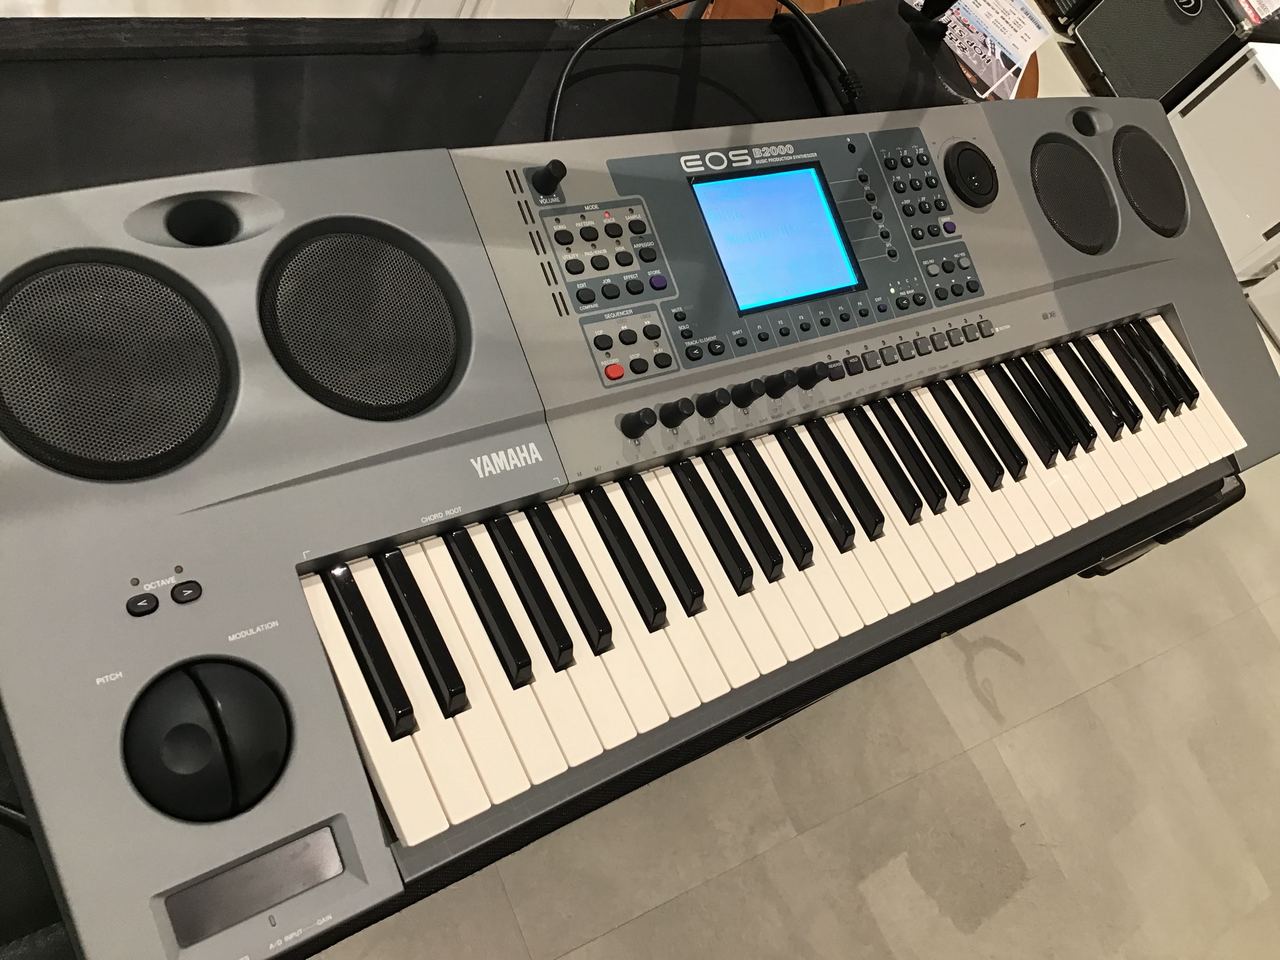 YAMAHA シンセサイザー EOS B2000W - 鍵盤楽器